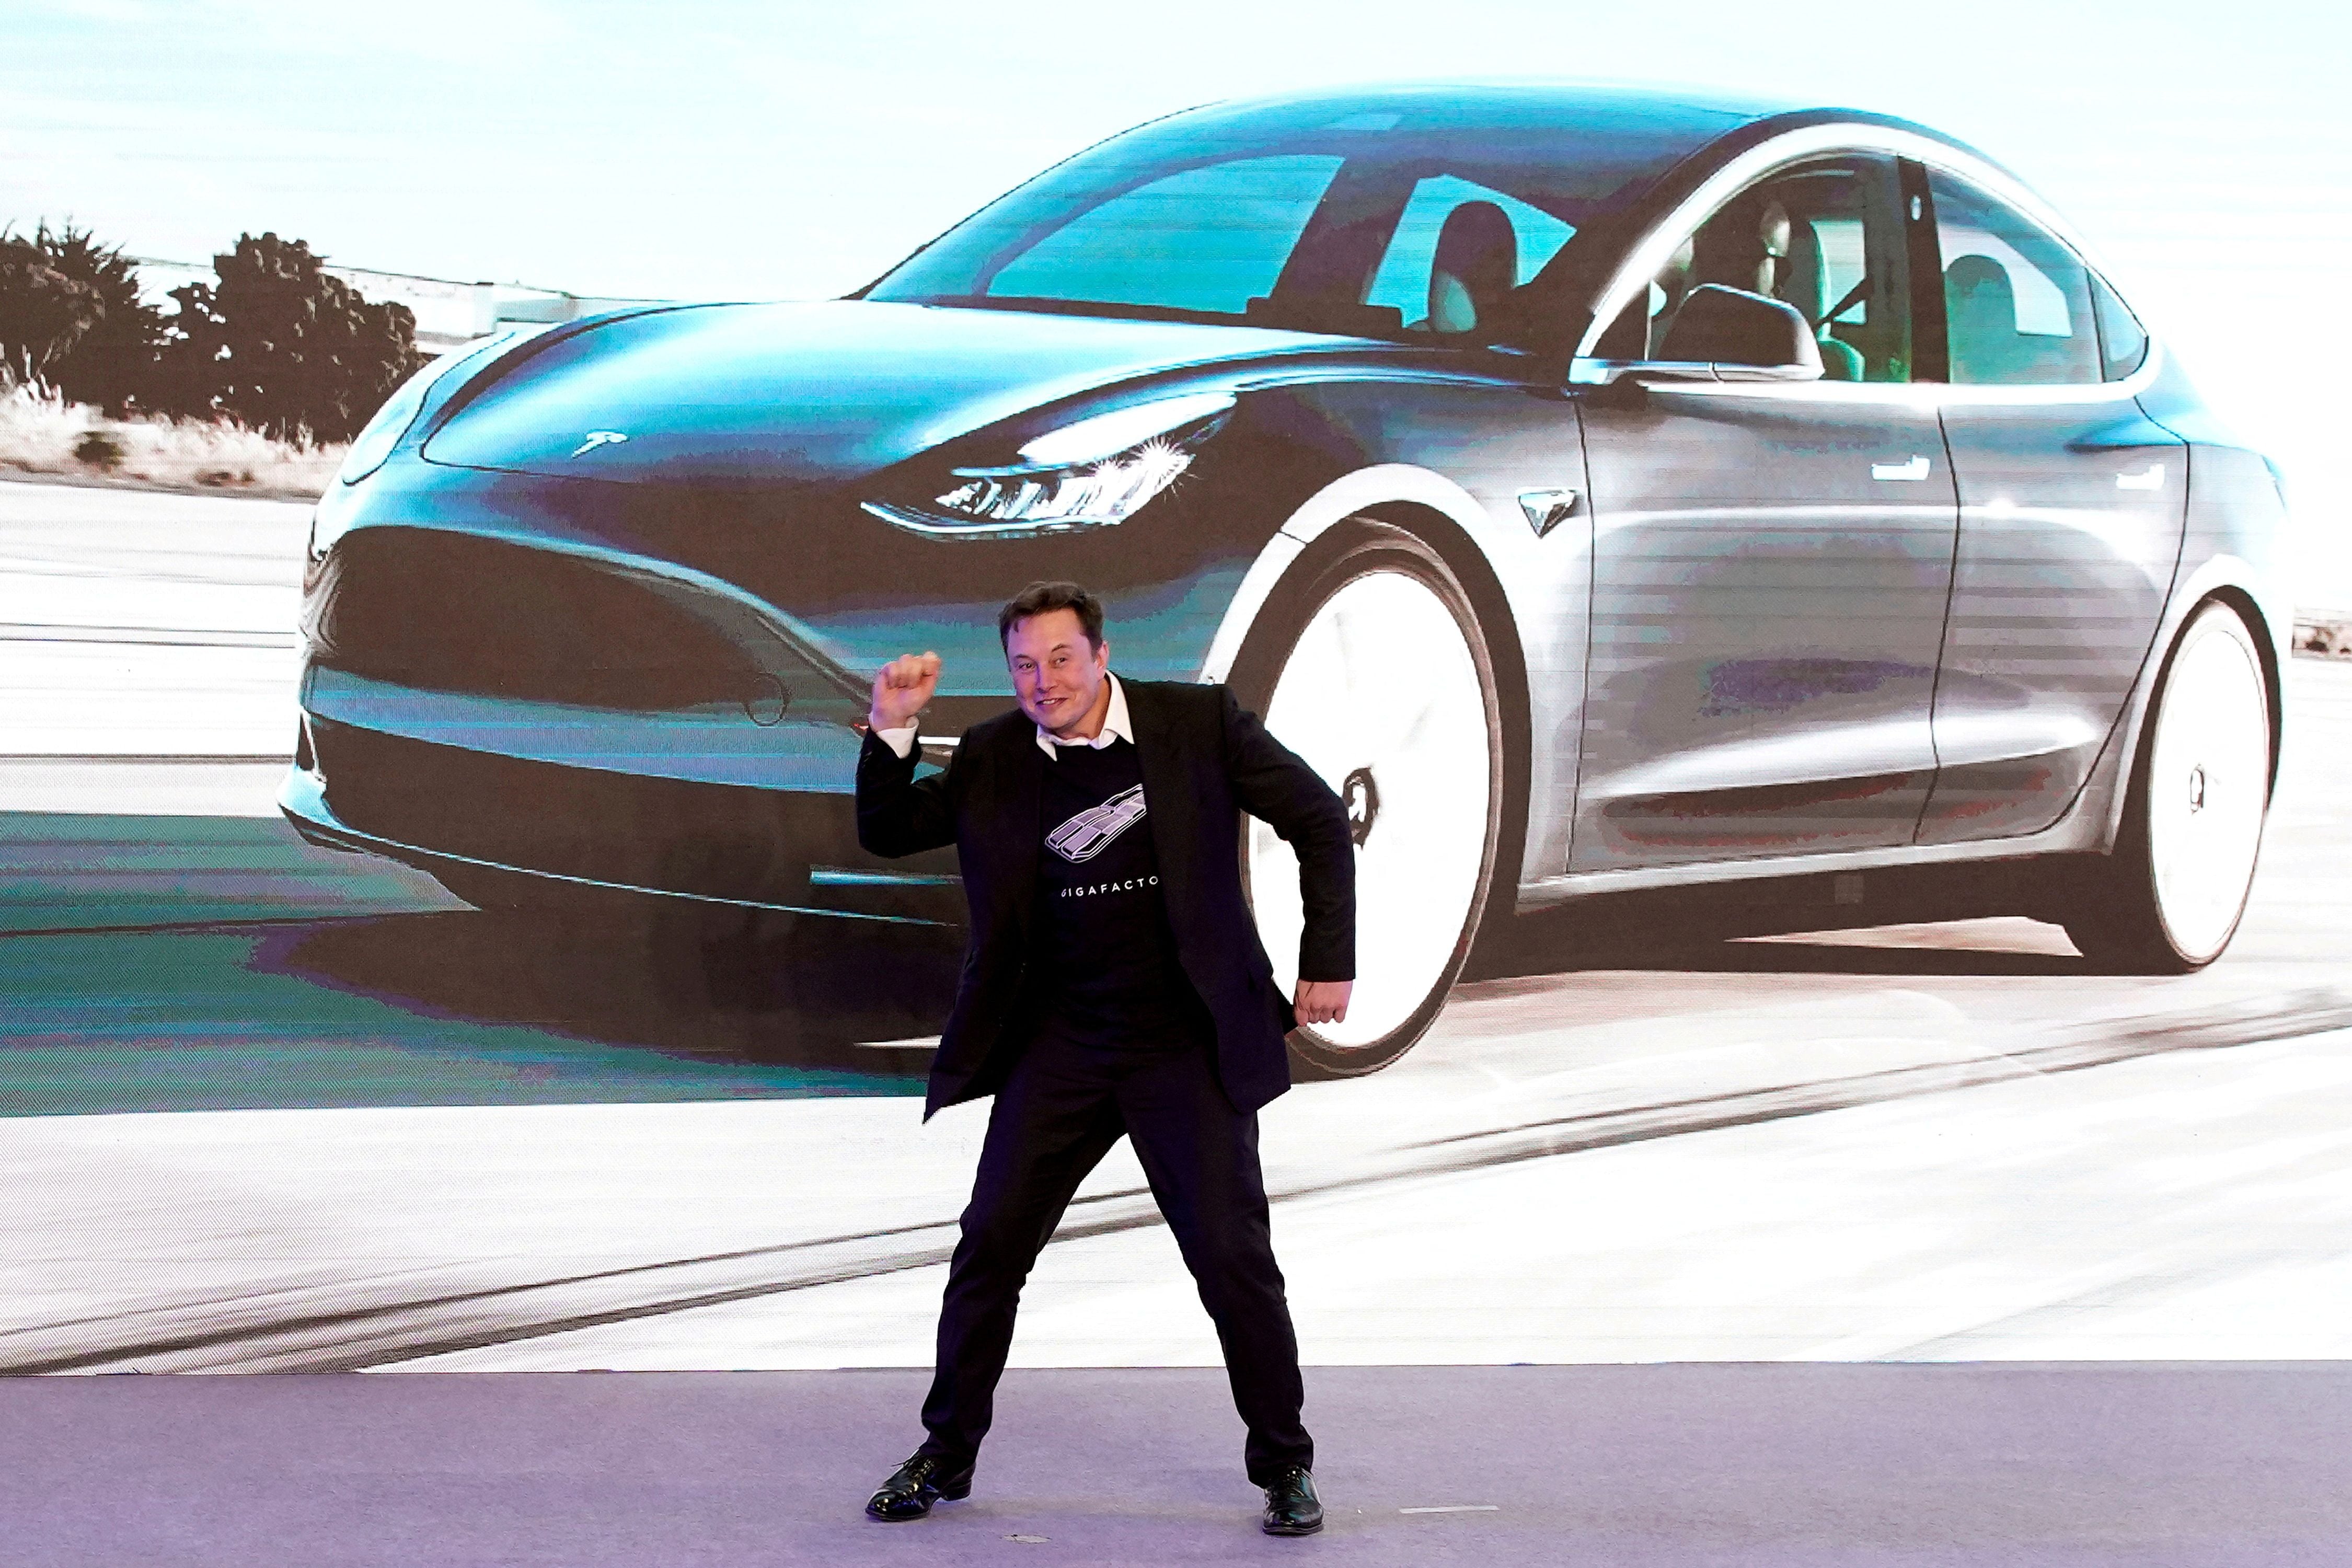 Elon Musk volvió millonaria en forma instantánea a una familia con una orden de compra para Tesla
File foto
